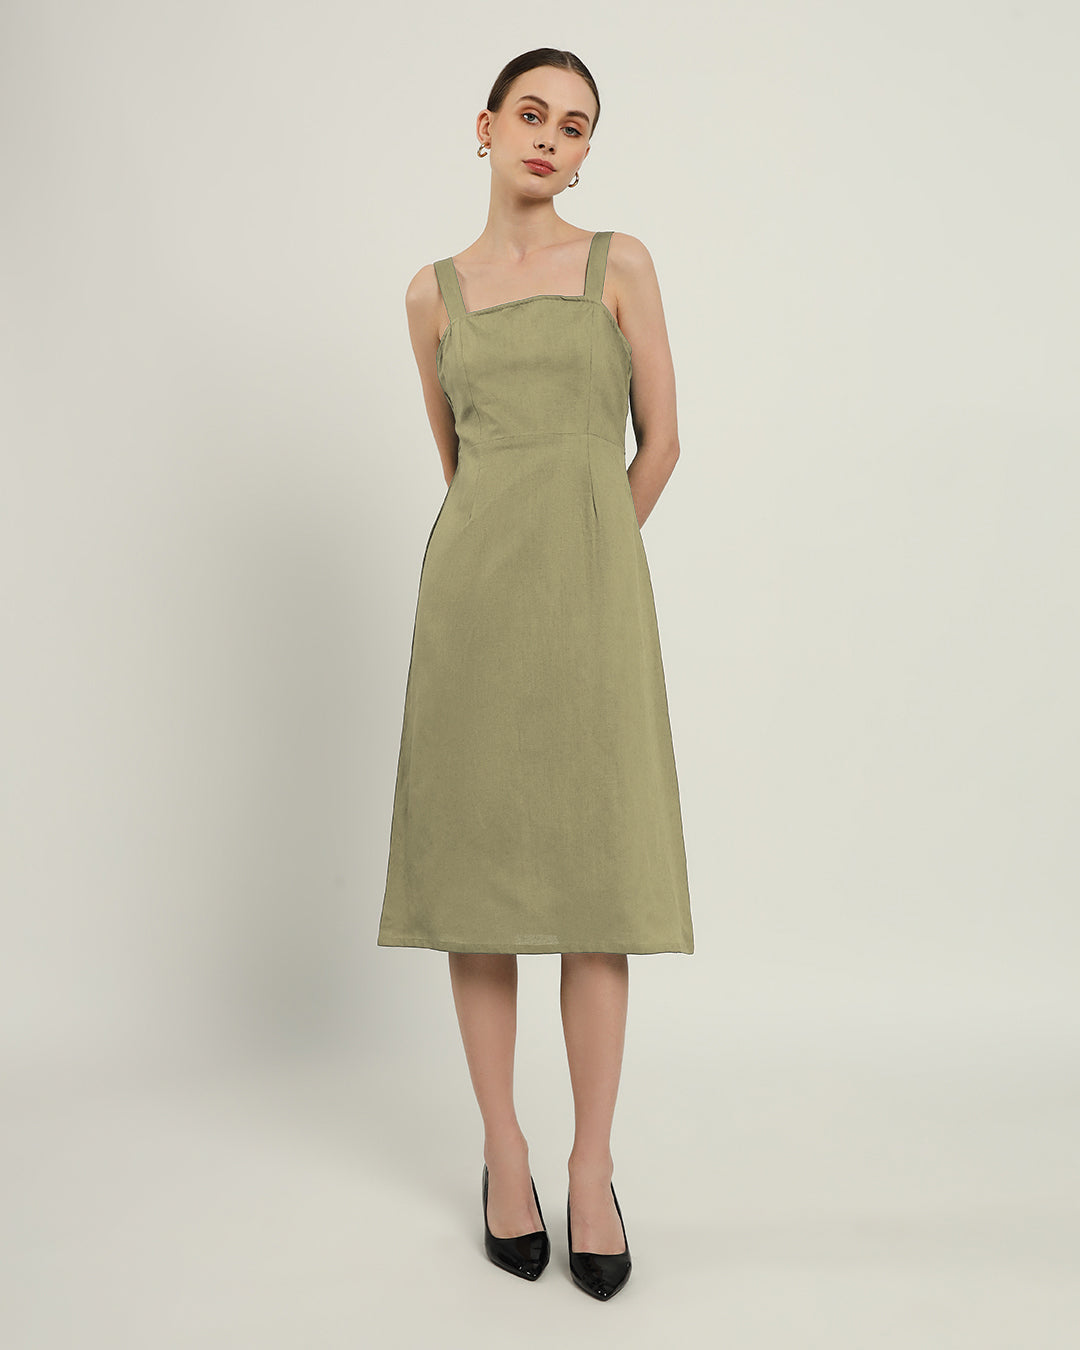 The Samara Daisy Olive Linen Dress